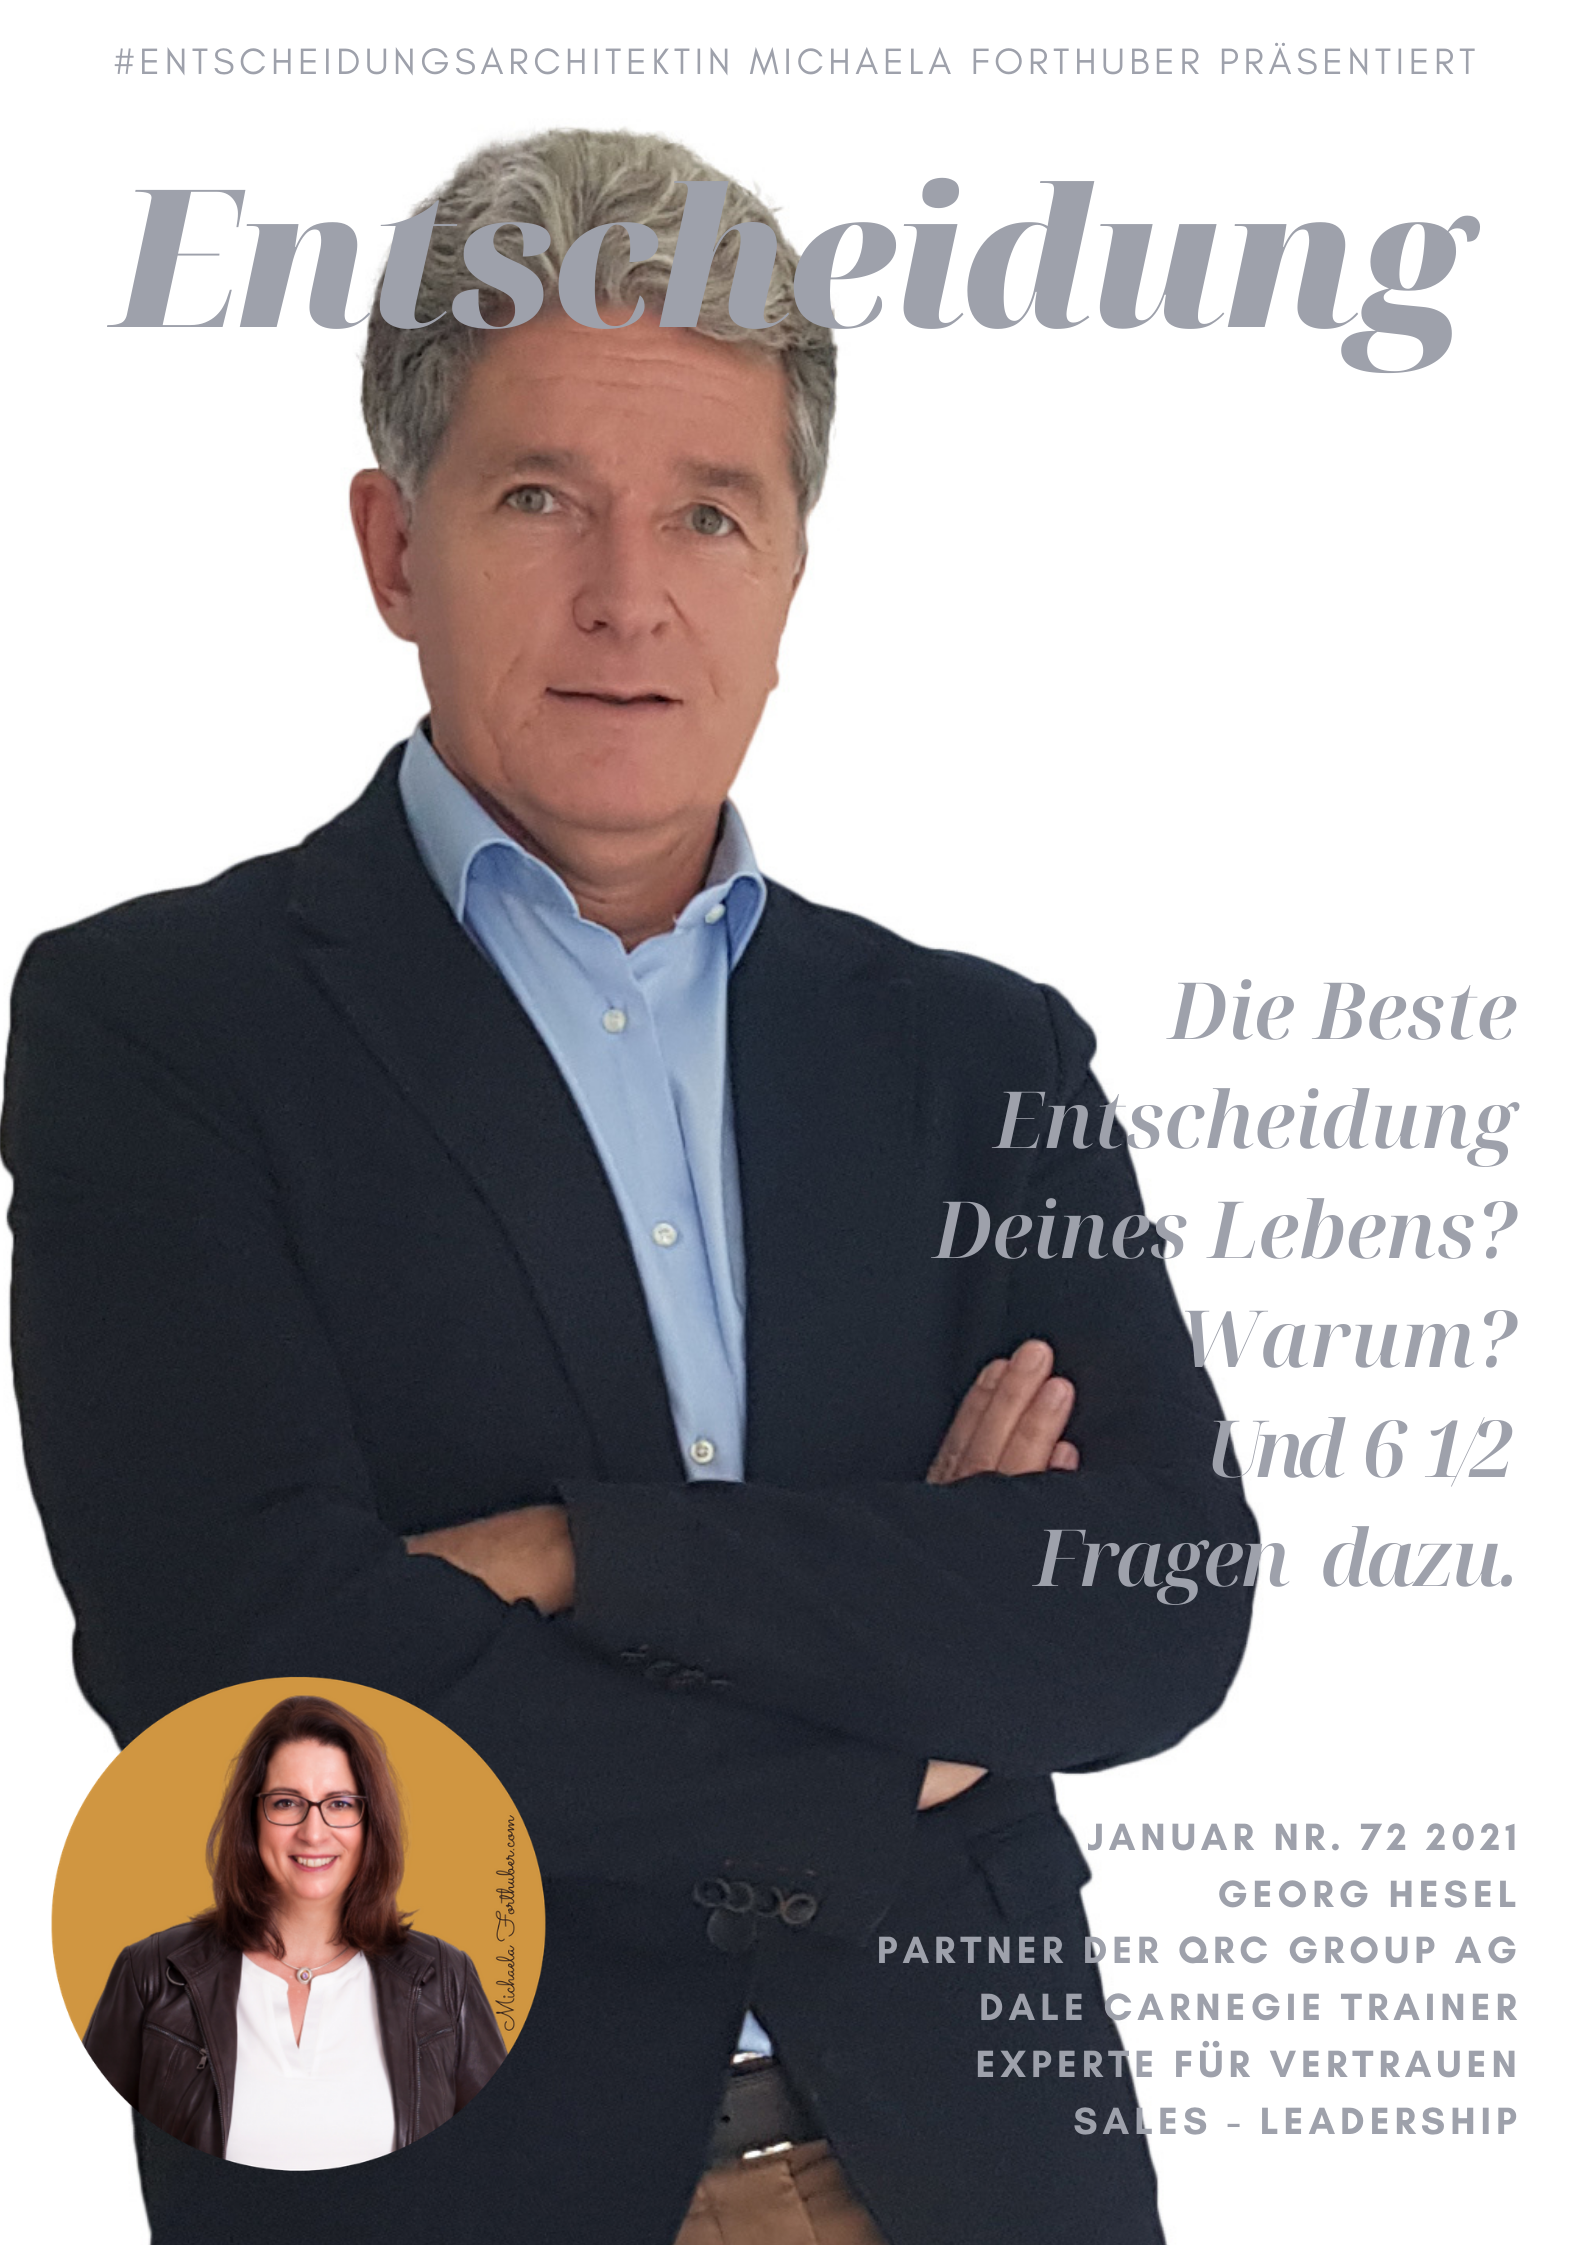 Blog Interview Entscheiden Cover Michaela Forthuber #Entscheidungsarchitektin mit Georg Hesel